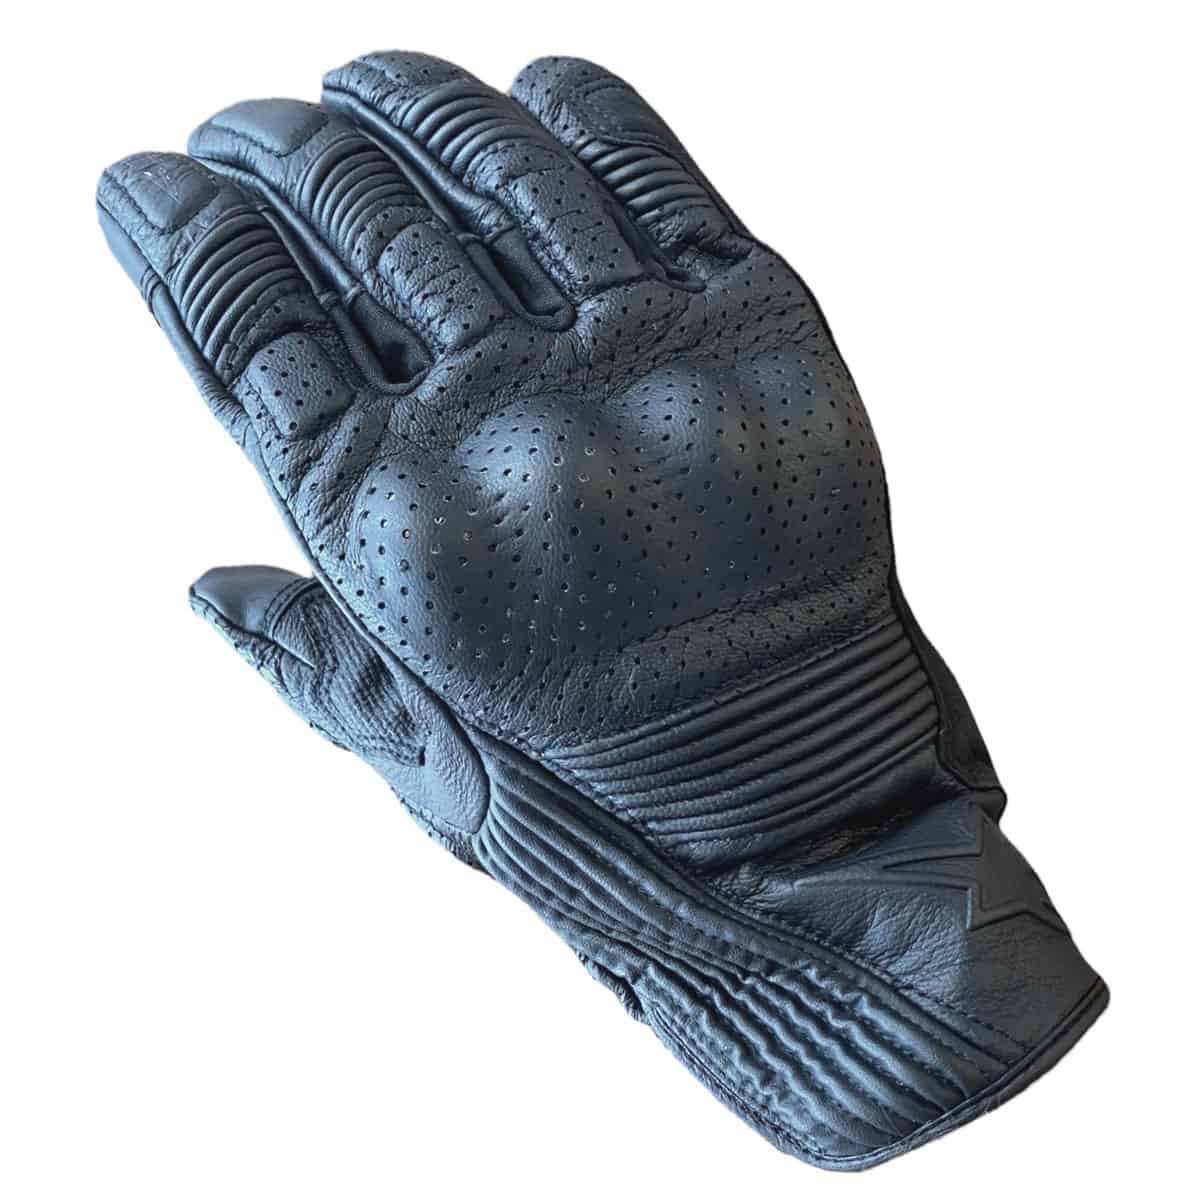 Alpinestars Mustang V2 Gloves: Summer motorcycle gloves - Back of hand